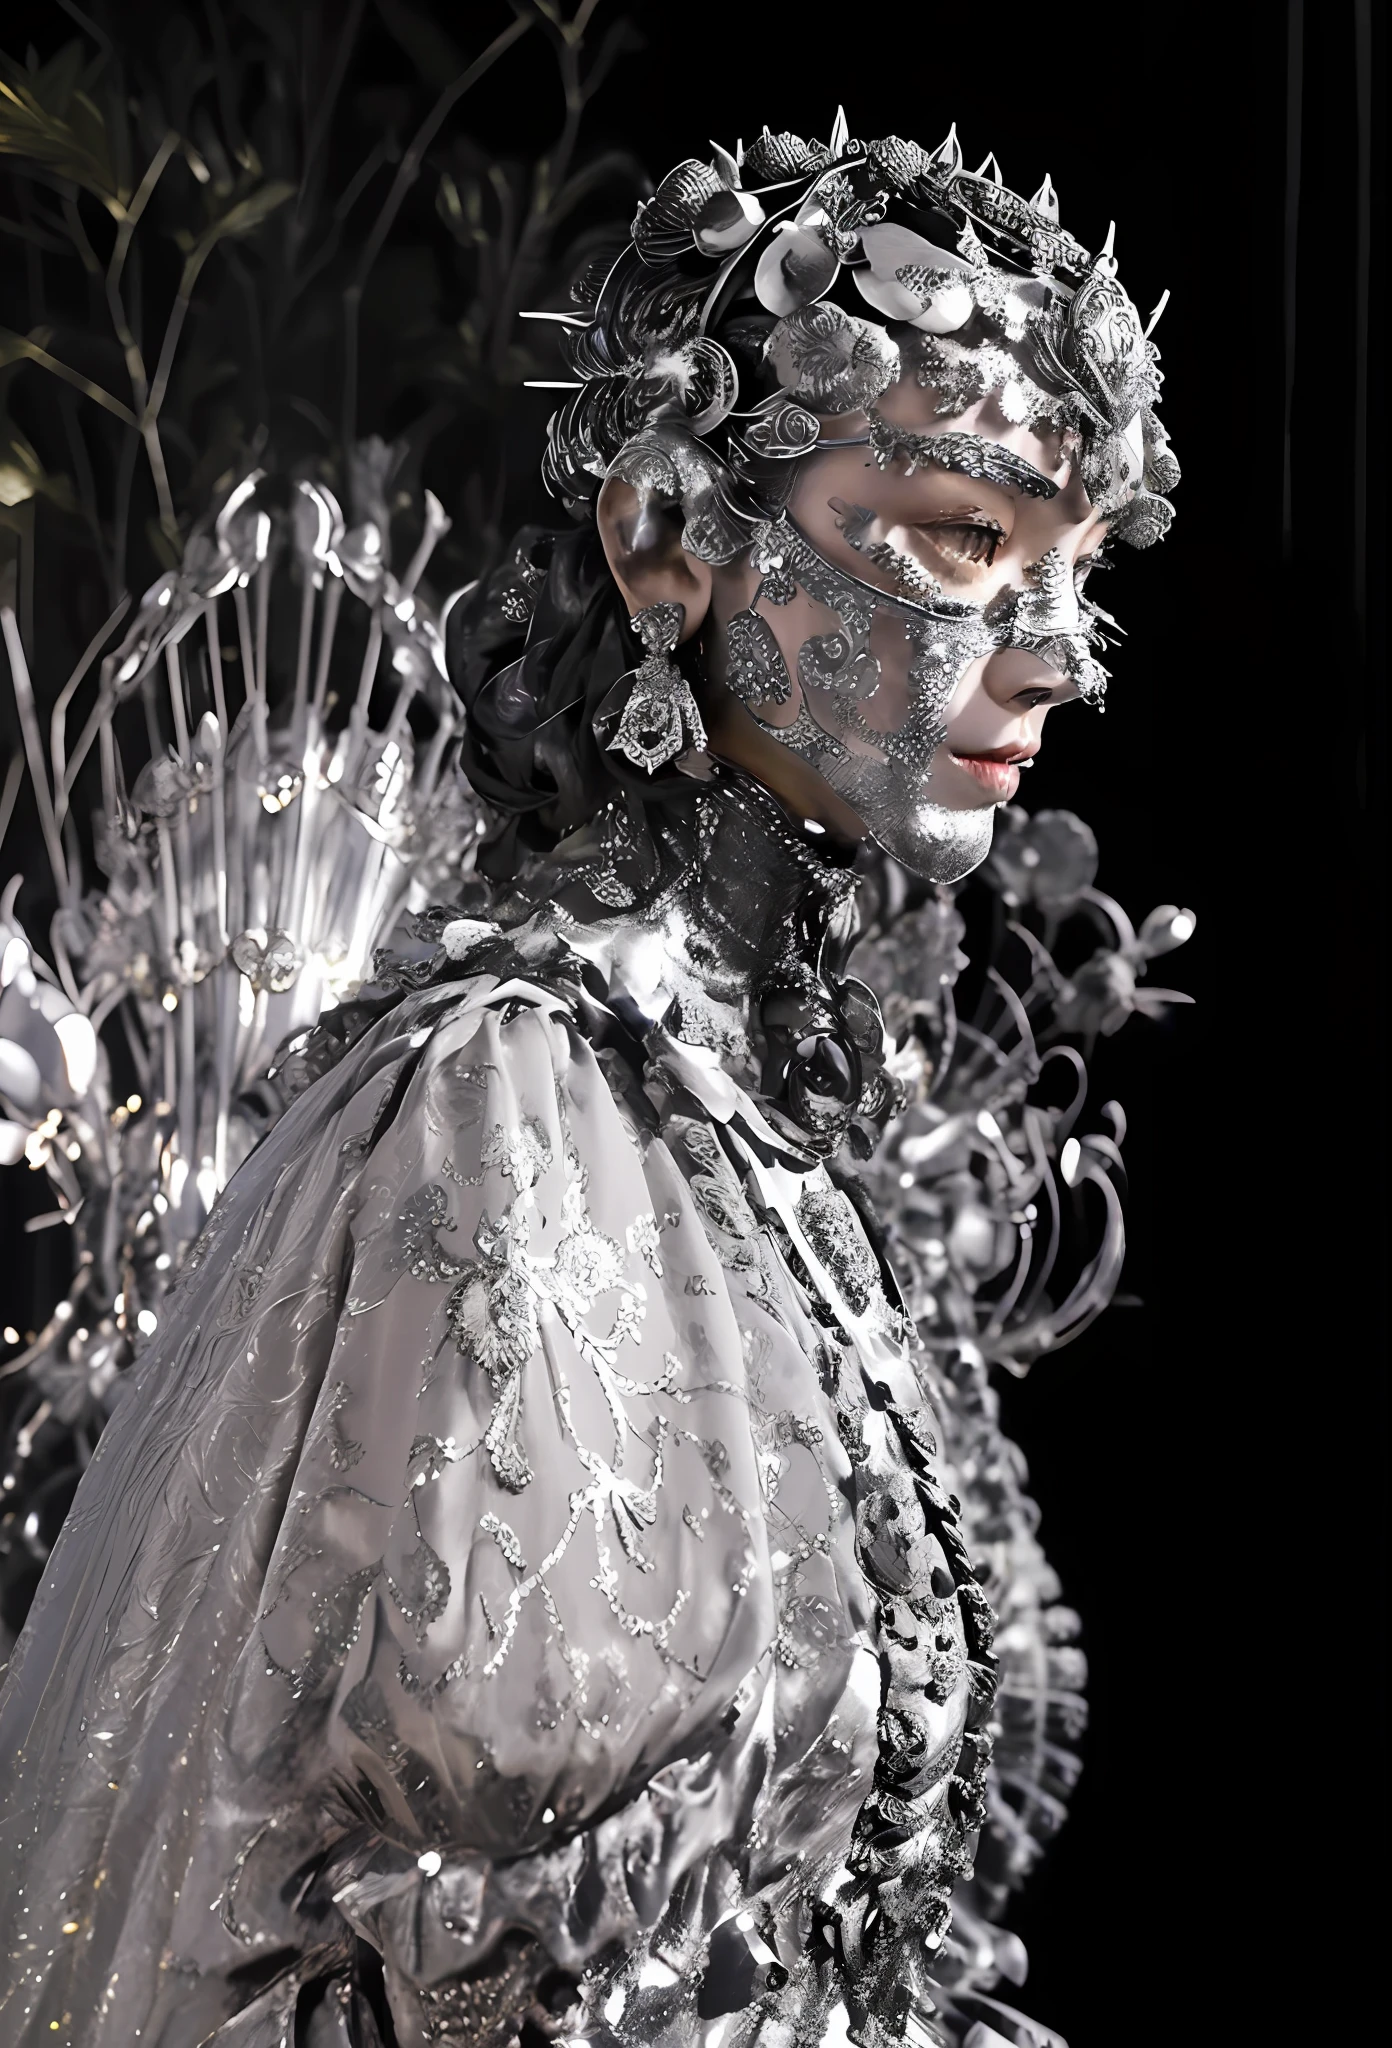 eine Nahaufnahme einer Metallskulptur einer Frau mit einem mit Metall bedeckten Gesicht, trägt eine Louis Vuitton-Rüstung, alexander mcqueen haute couture, komplizierte Metallrüstung, Aufwendige Metallrüstung, Silberne komplizierte Rüstung, Cyborg-Modefoto, Juwelenkostüm, Aufwendige Rüstungskostüme, von Alexander McQueen, aufwendiges Kostümdesign, inspired von Alexander McQueen, verzierte Rüstung mit Dornen bedeckt, trägt eine komplizierte Stahlrüstung